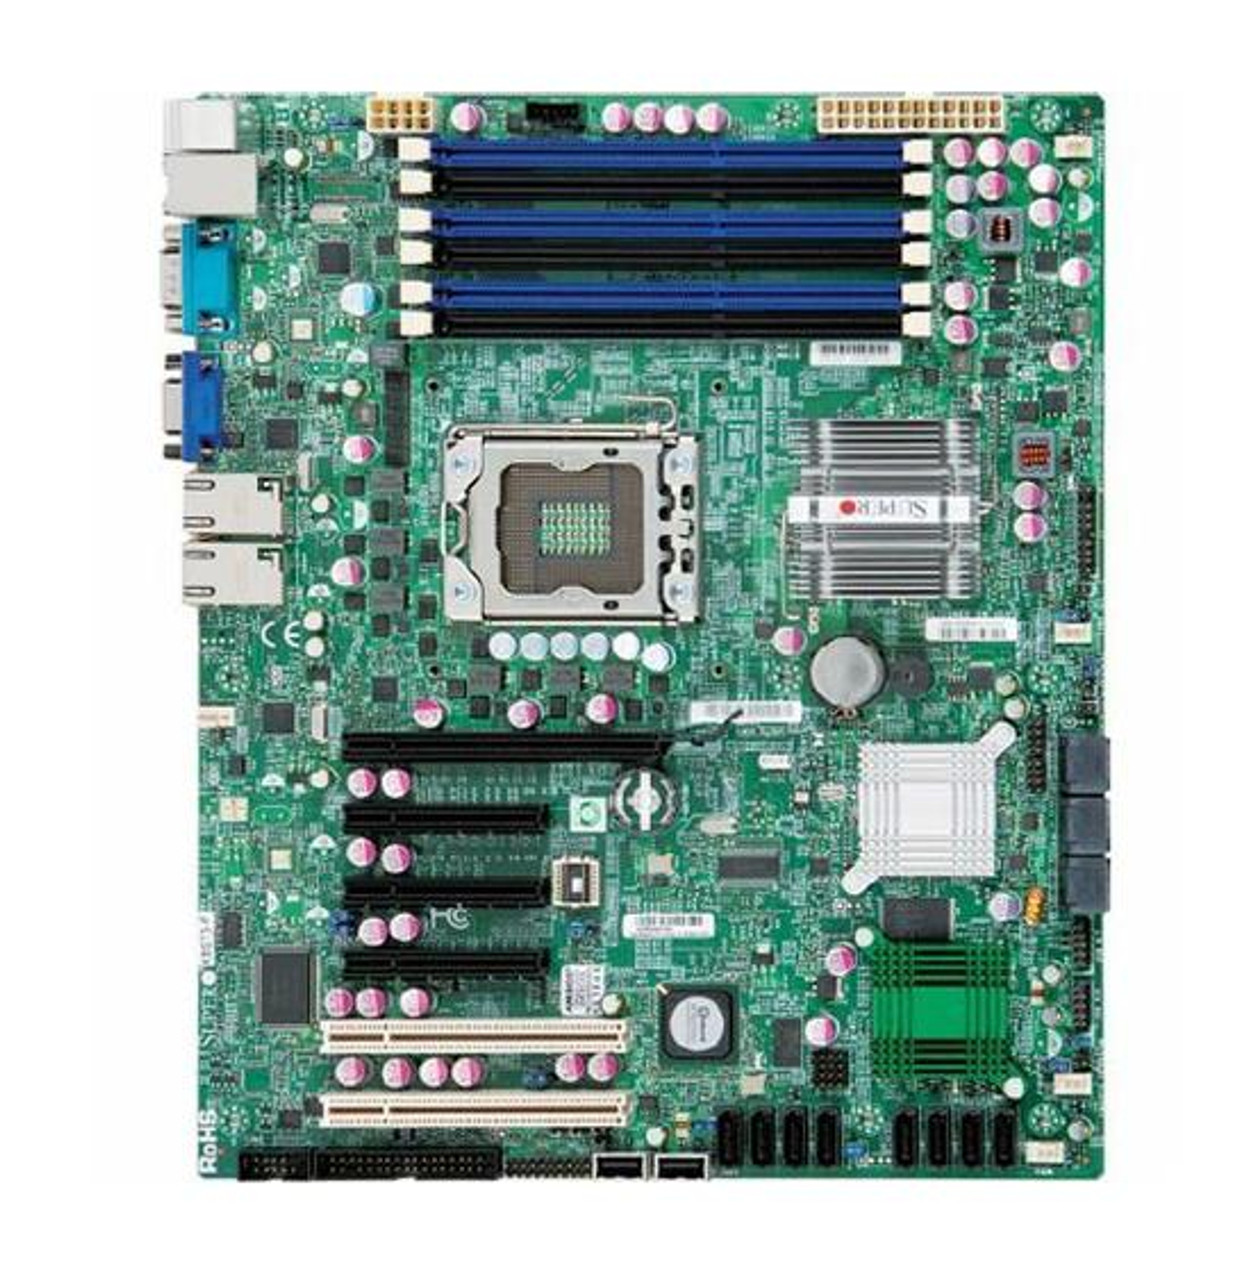 MBD-X8ST3-F-O-EW3 SuperMicro X8ST3-F Socket LGA1366 Intel X58 Express Chipset ATX Server Motherboard (Refurbished)